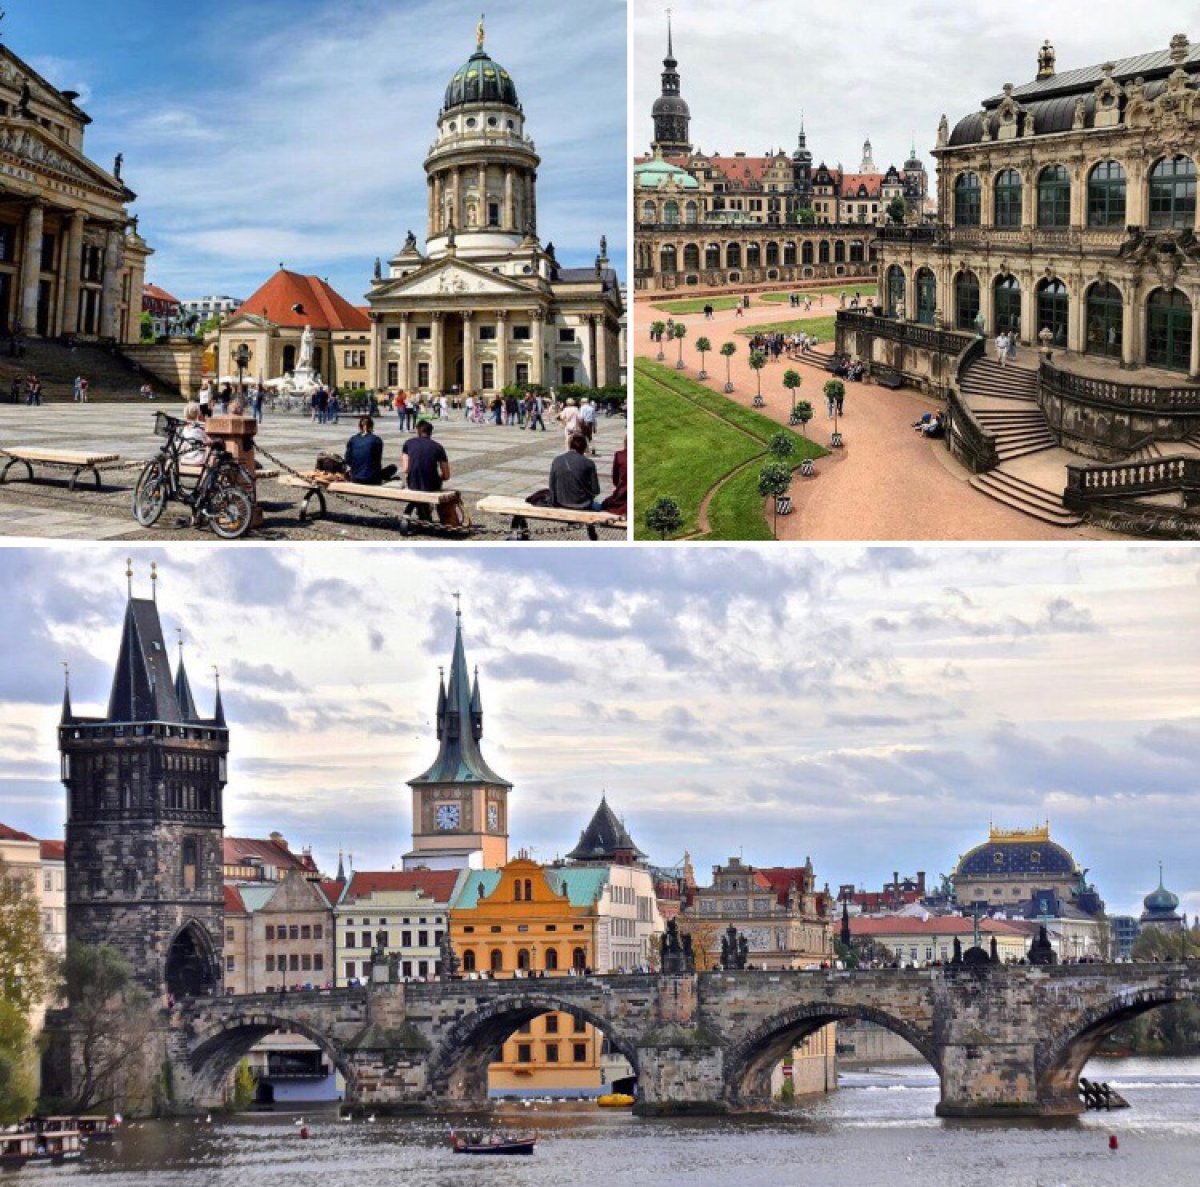 Открыт набор участников поездки по маршруту “Берлин-Дрезден-Прага: весеннее вдохновение🌸” с 15 марта по 22 марта 2020 г. по приглашению Информационного Центра Европейского Союза в г. Берлин.